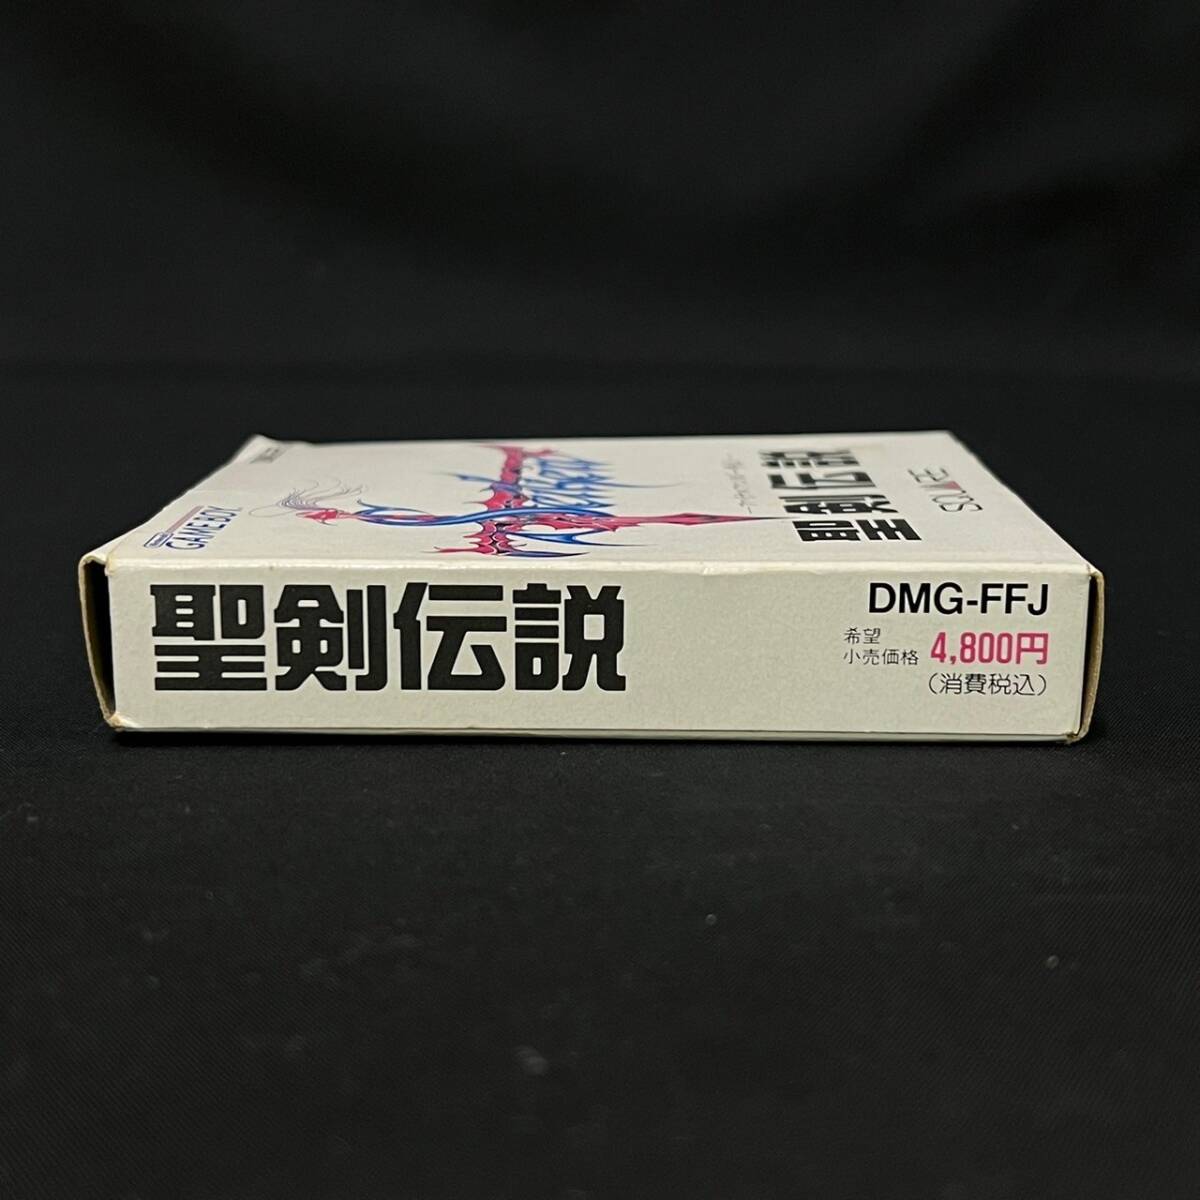 BDg183R 60 読込◯ 箱付き GB ゲームボーイ ソフト 聖剣伝説 ファイナルファンタジー外伝 1991 DMG-FFJ SQUARE スクウェア 説明書の画像6